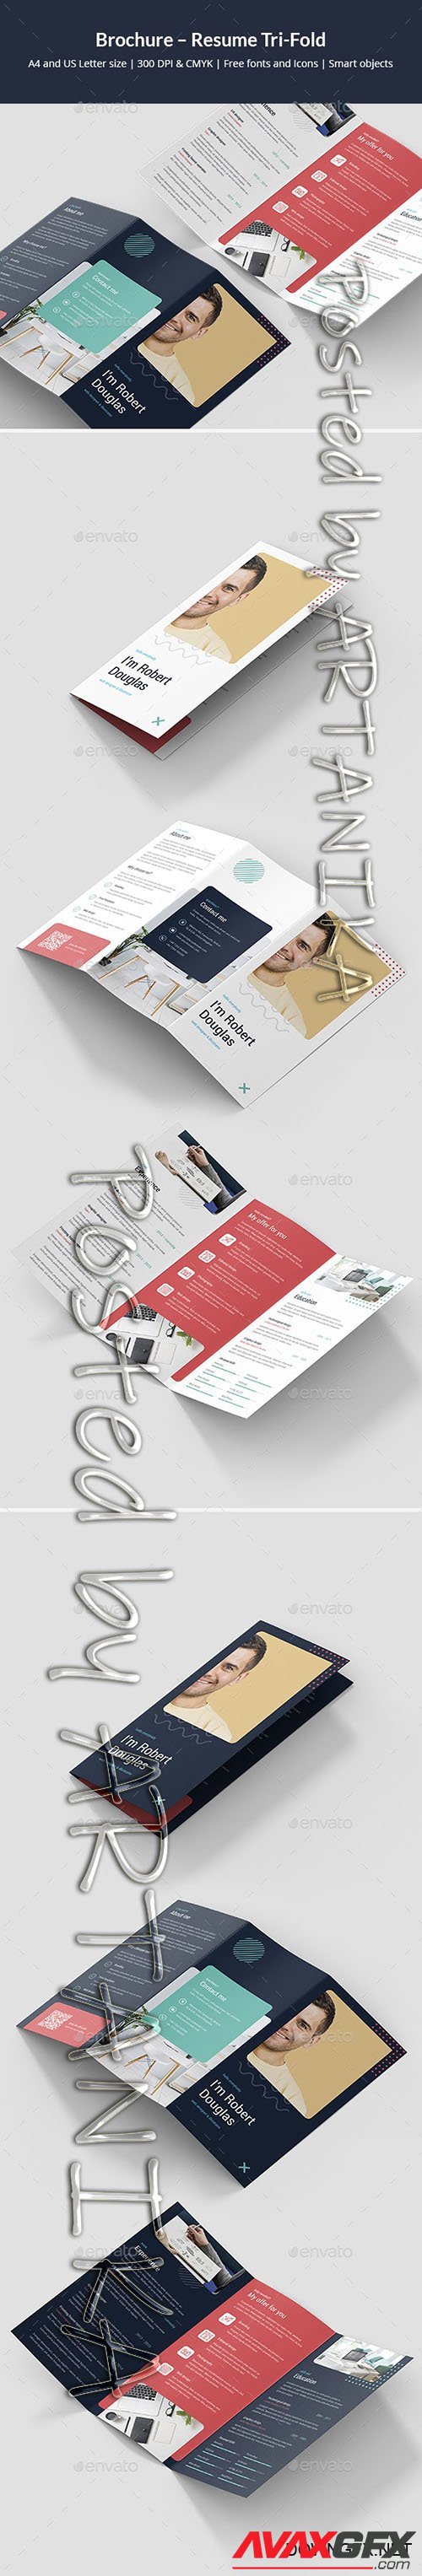 GraphicRiver - Brochure Resume Tri-Fold 24767799